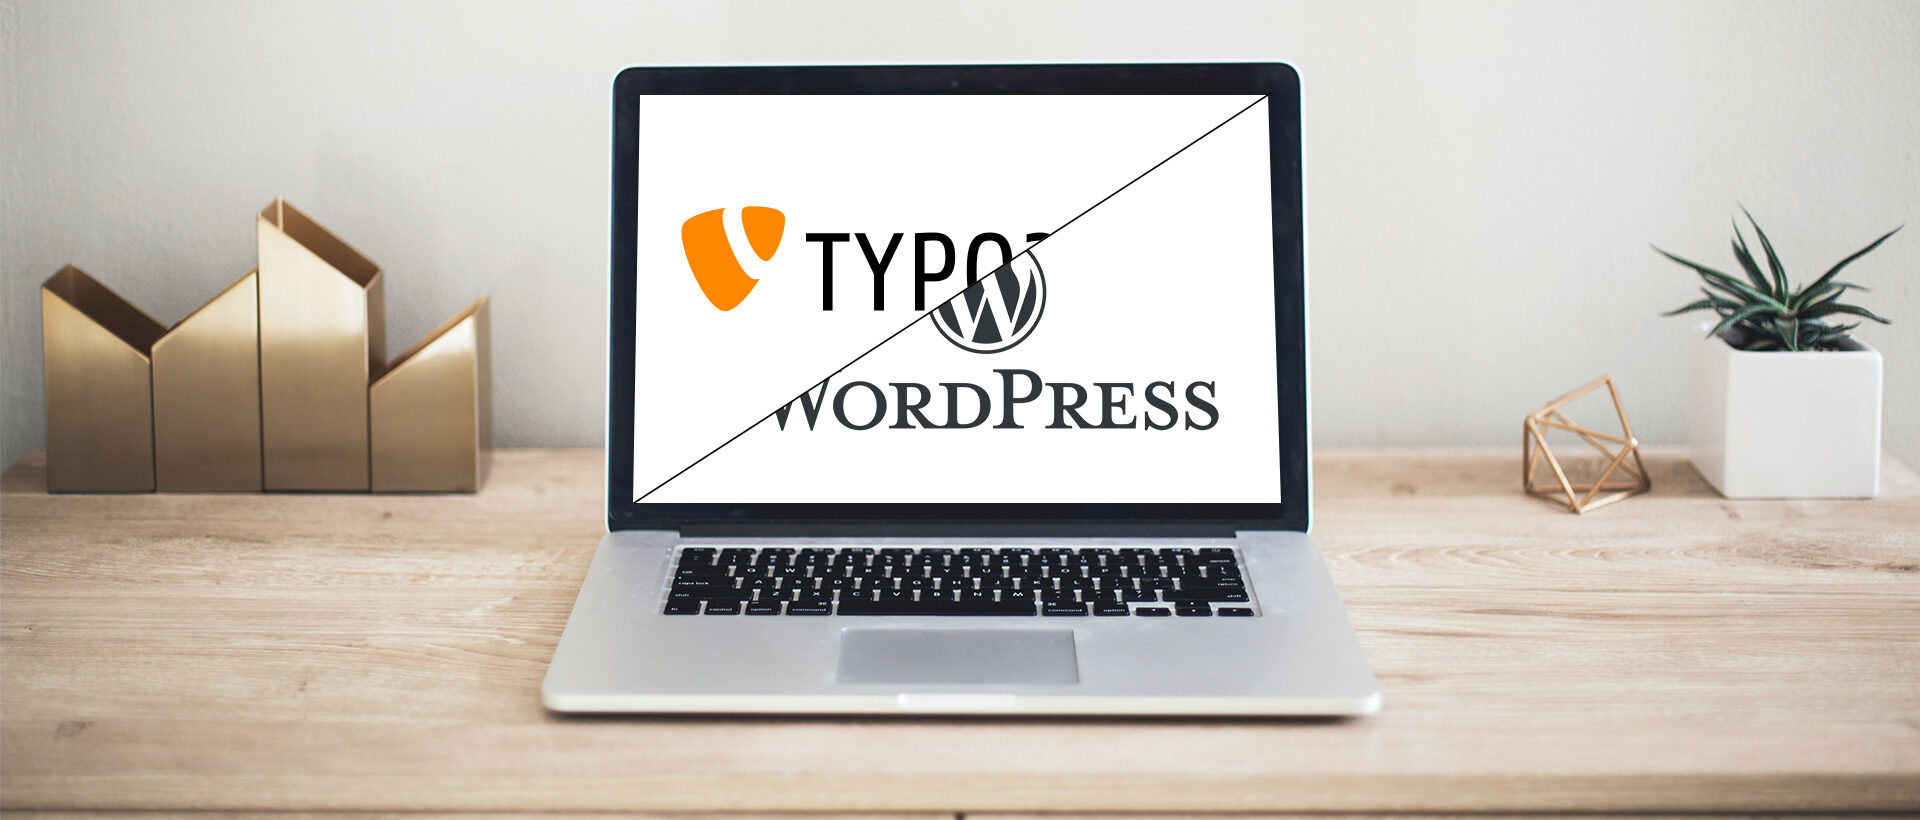 MacBook Pro mit WordPress und TYPO3 Logo auf dem Bildschirm